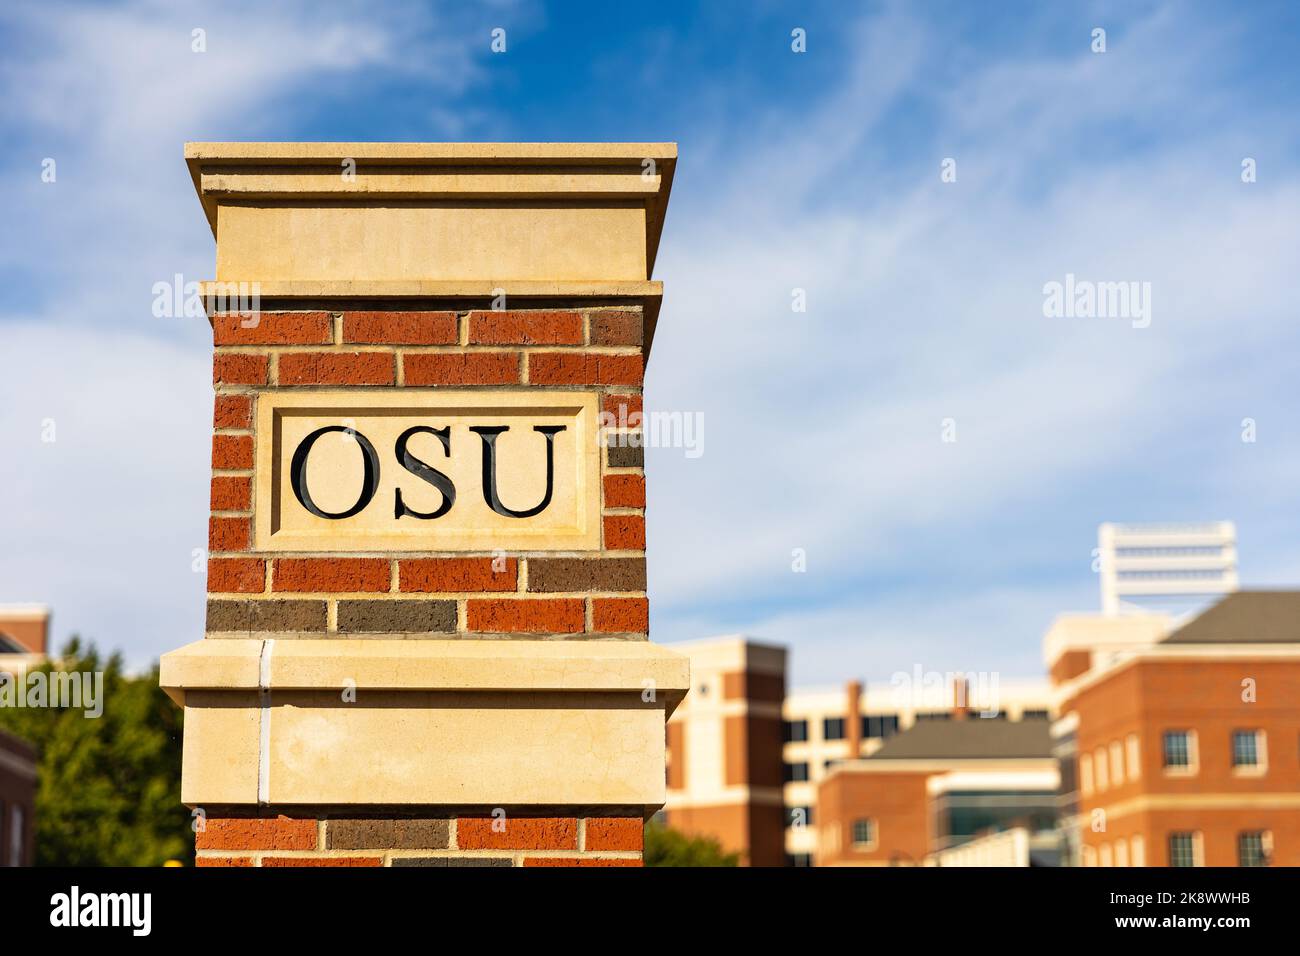 Stillwater, OK - 21. Oktober 2022: OSU-Schriftzug auf Ziegelsteinsäule auf dem Campus der Oklahoma State University Stockfoto